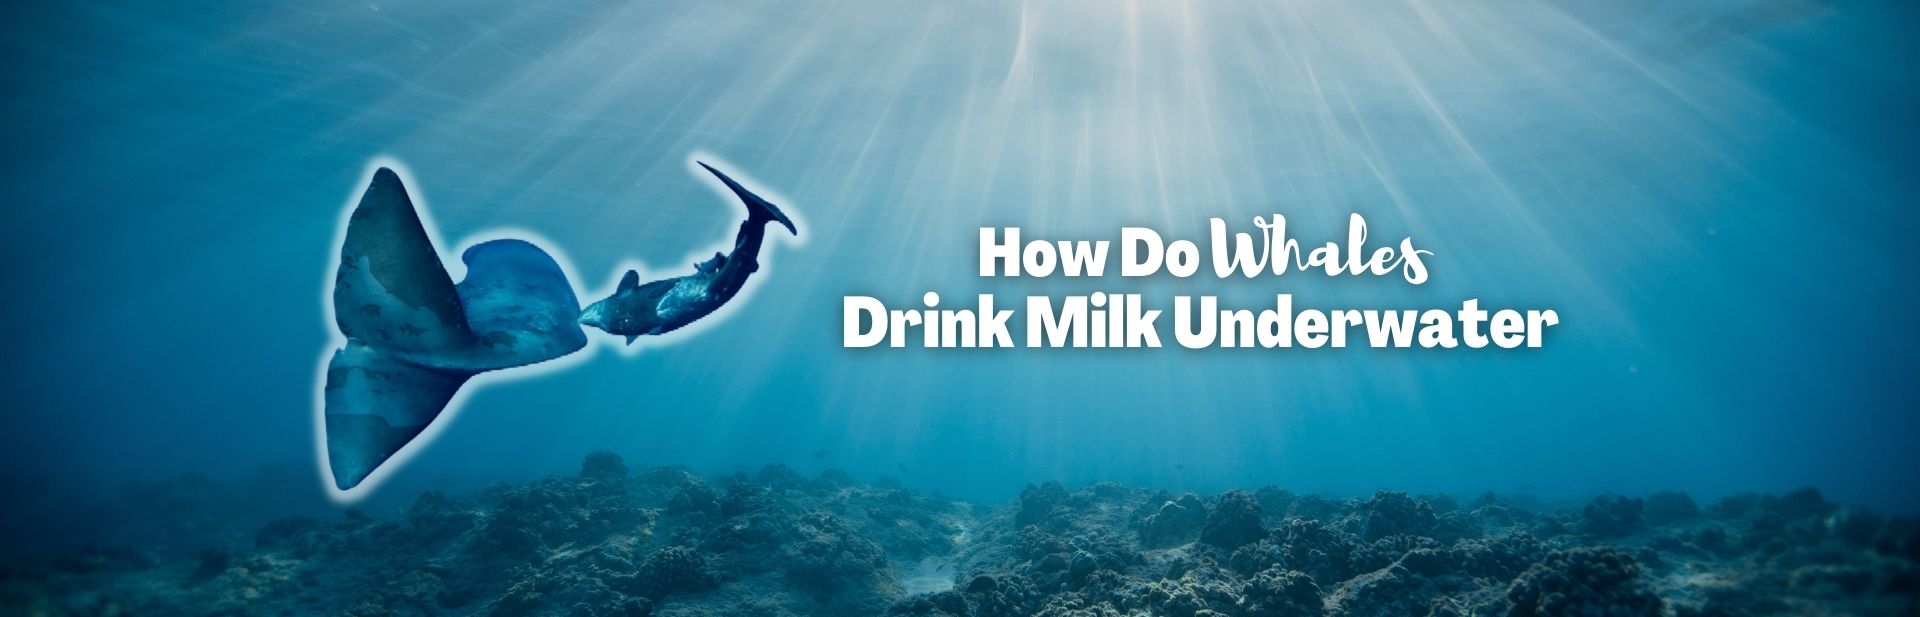 Nurturing Under the Sea: How Do Whales Drink Milk Underwater?